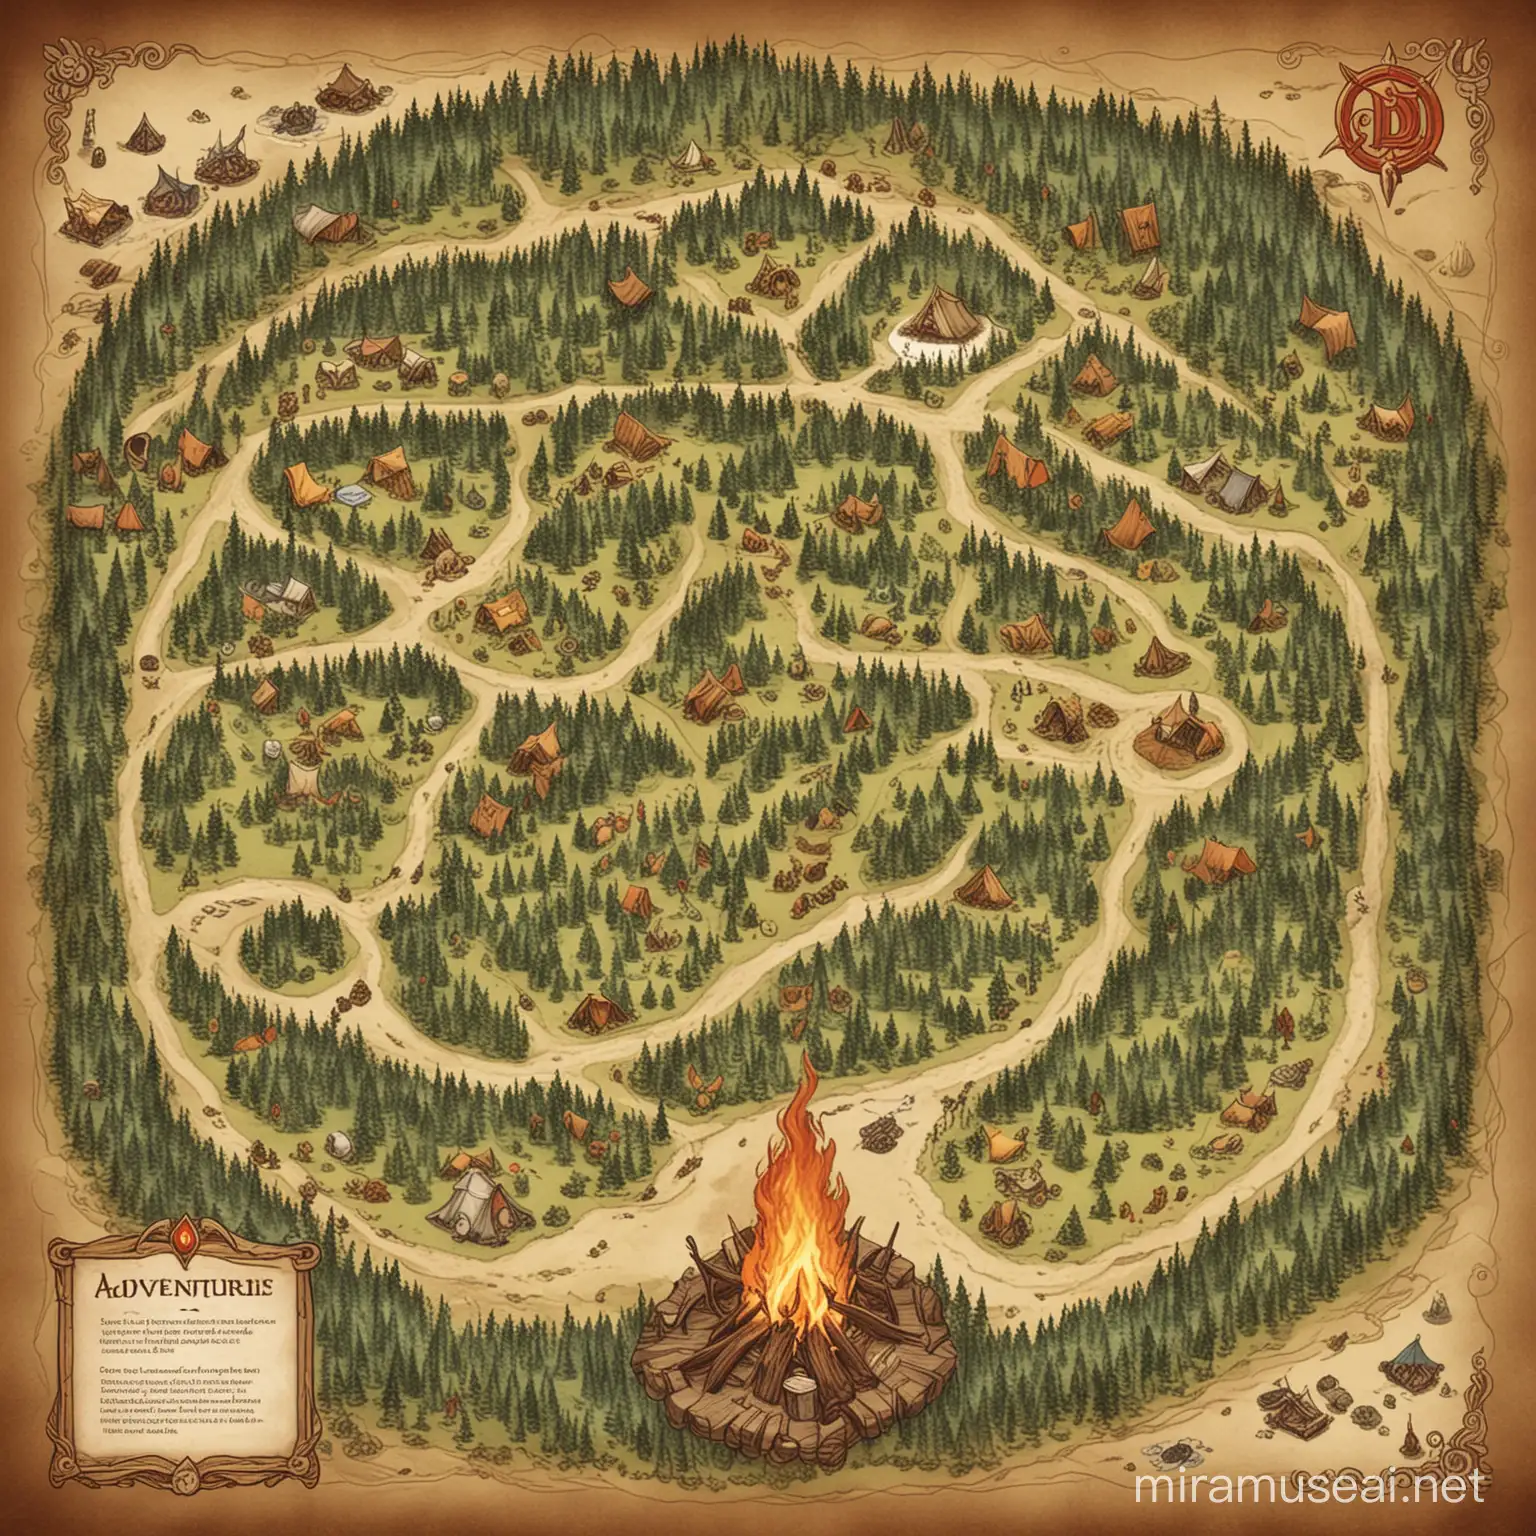 придумай карту лагеря приключенцев для днд с палатками и костром в центре